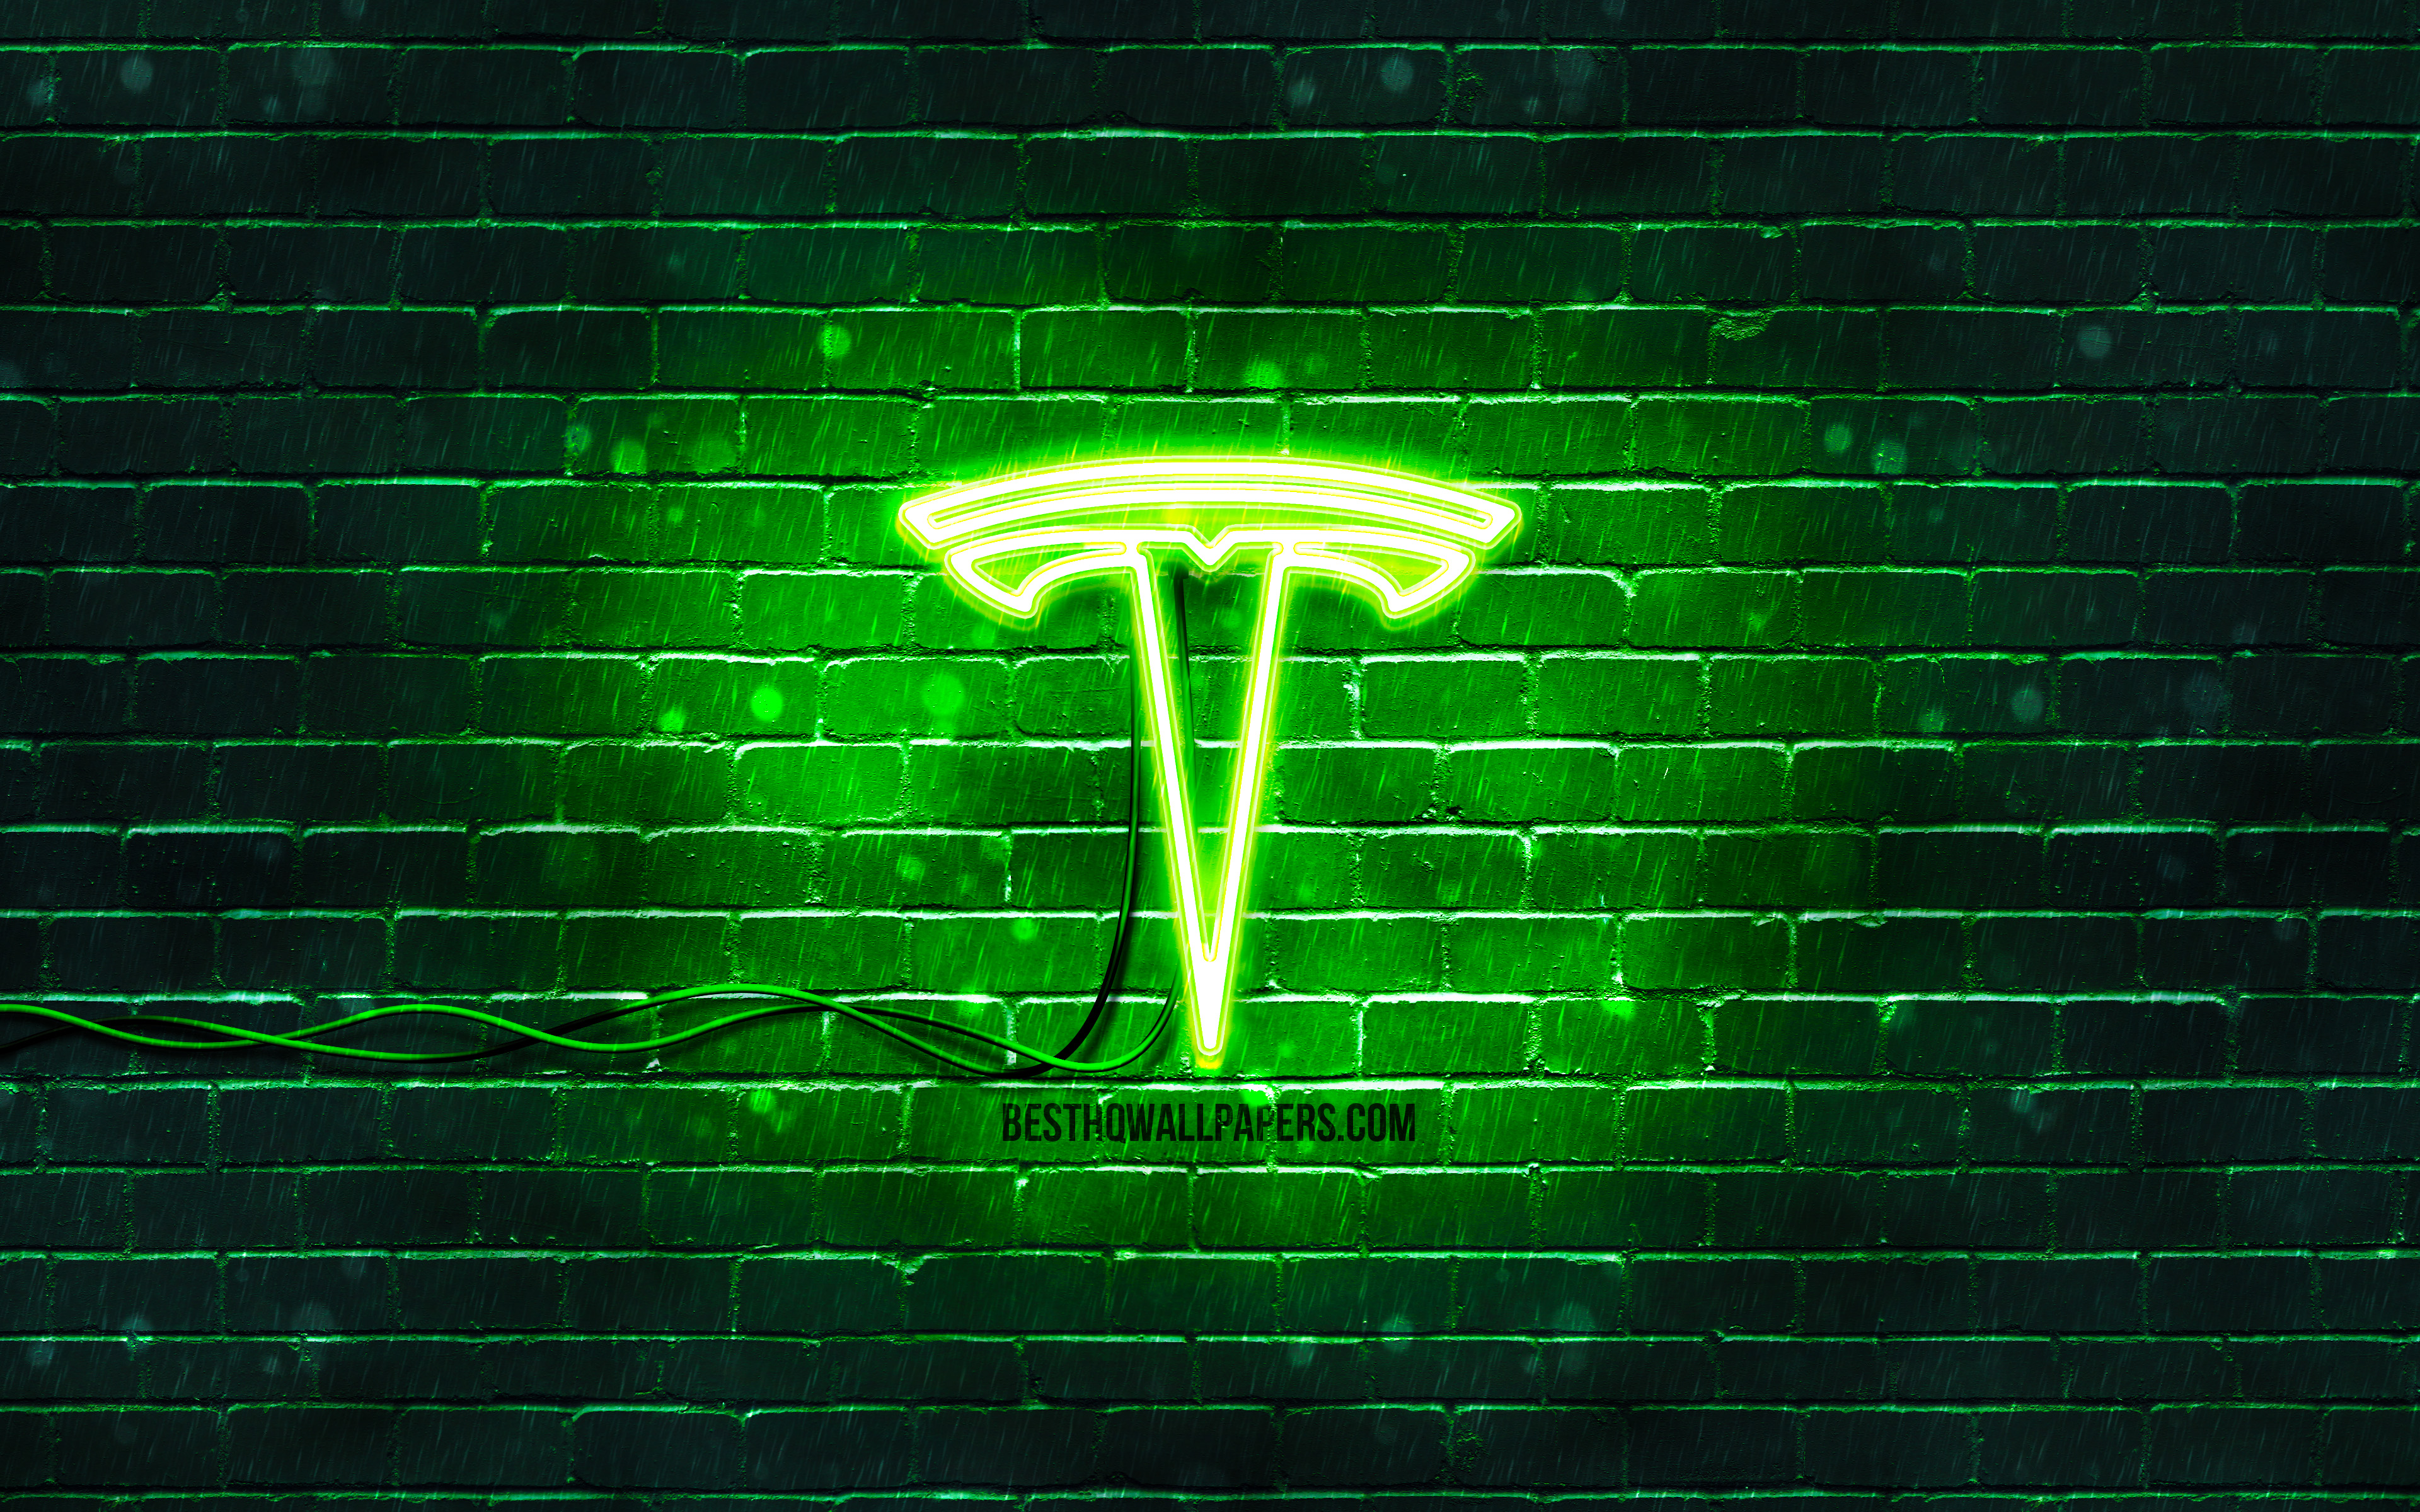 Download wallpapers Tesla green logo, 4k, green brickwall, Tesla logo, cars...